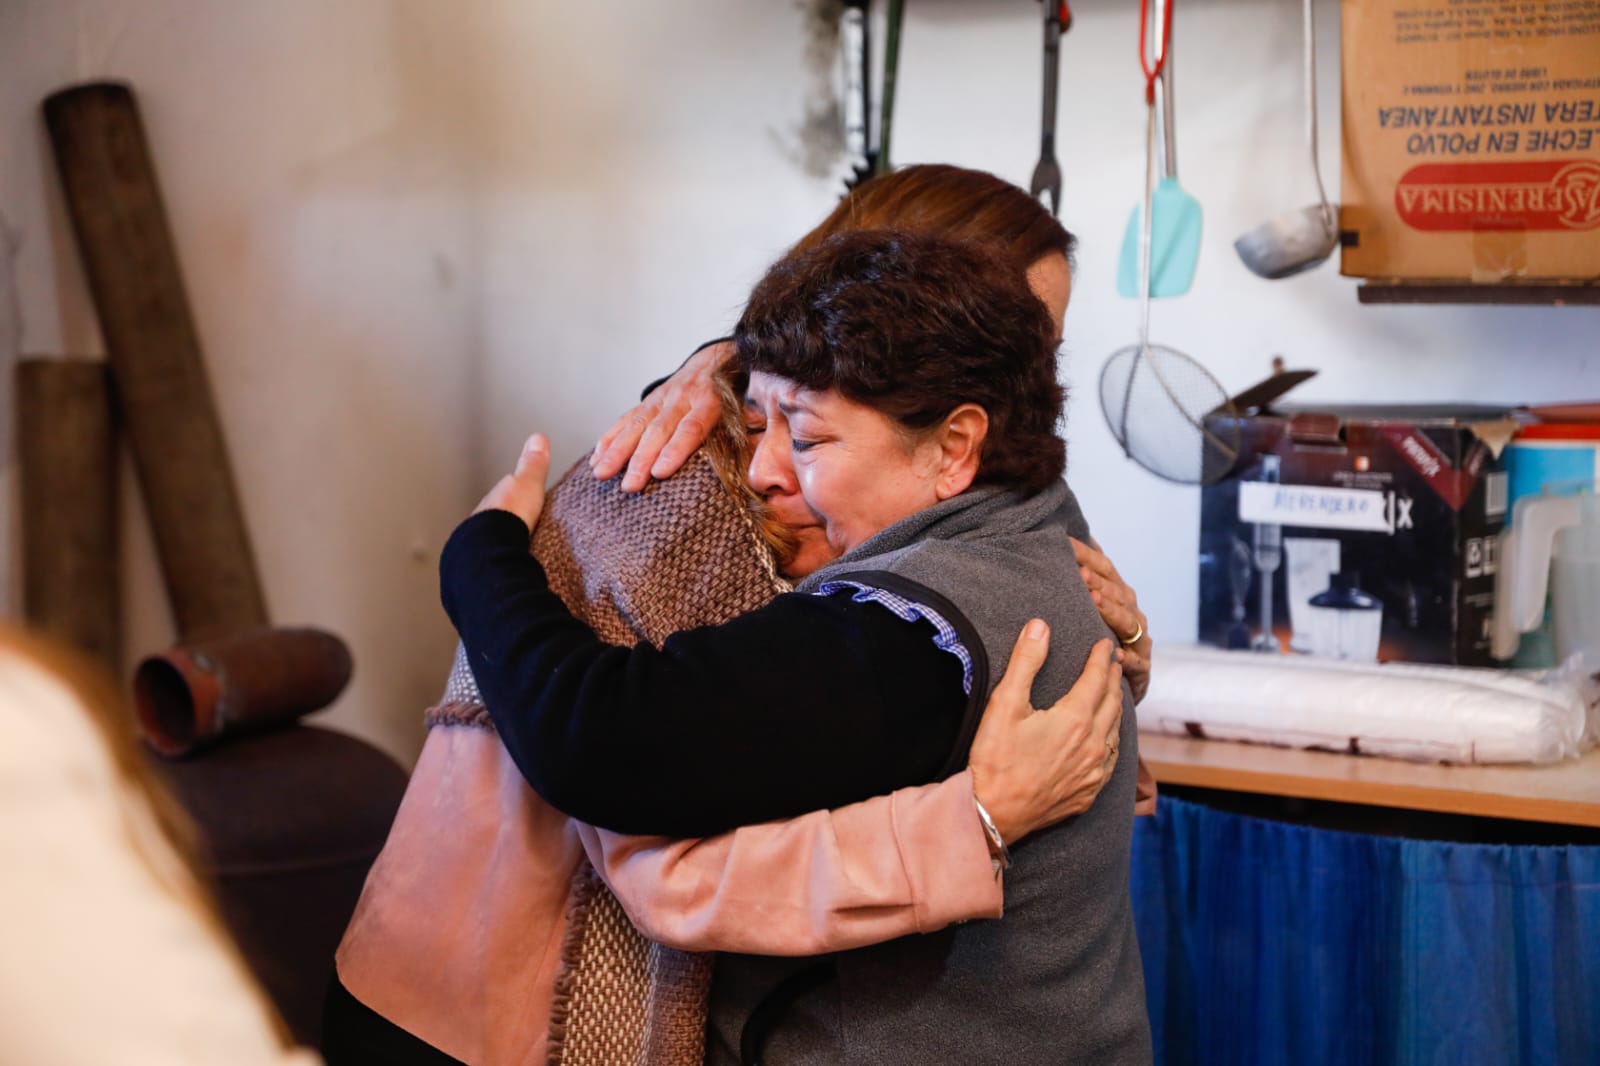 La Ministra Tolosa Paz, saludando con un abrazo a una colaboradora del Merendero "Los Abuelos" en Maipú, Provincia de Buenos Aires.